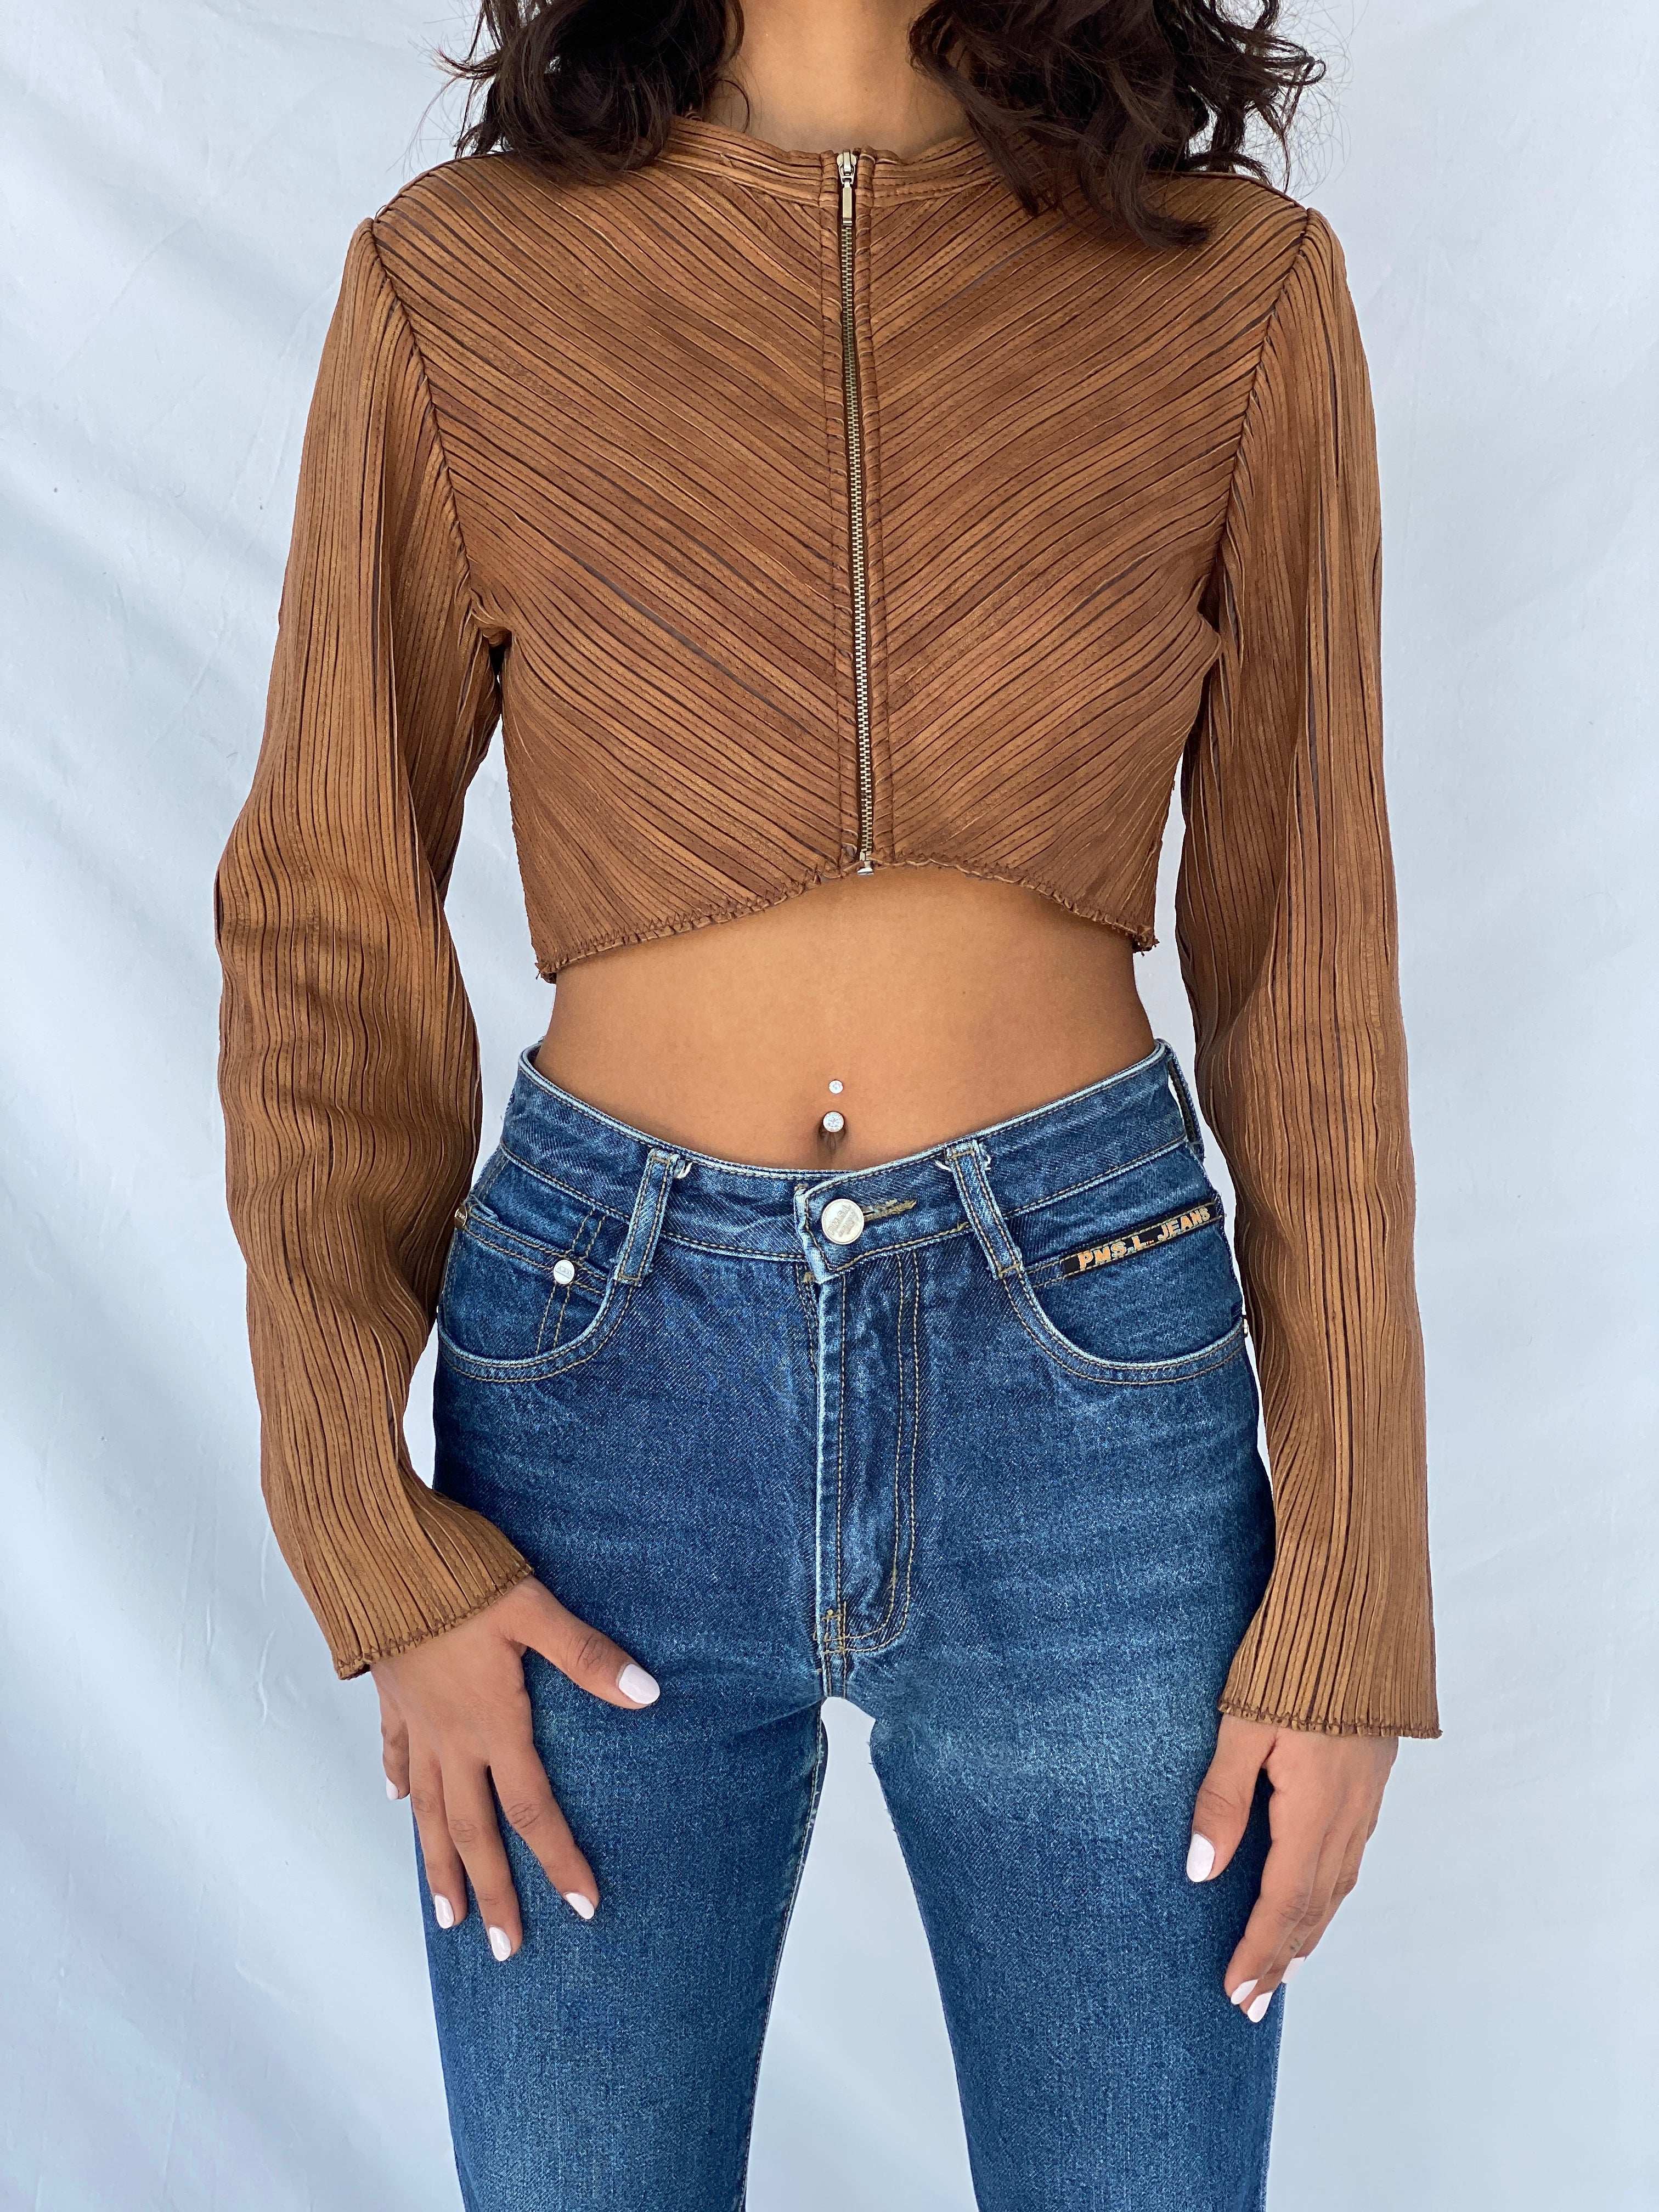 Vintage Brown Genuine Leather Zip Up Crop Top - Size S - Balagan Vintage Full Sleeve Top 90s, full sleeve top, Tojan, winter